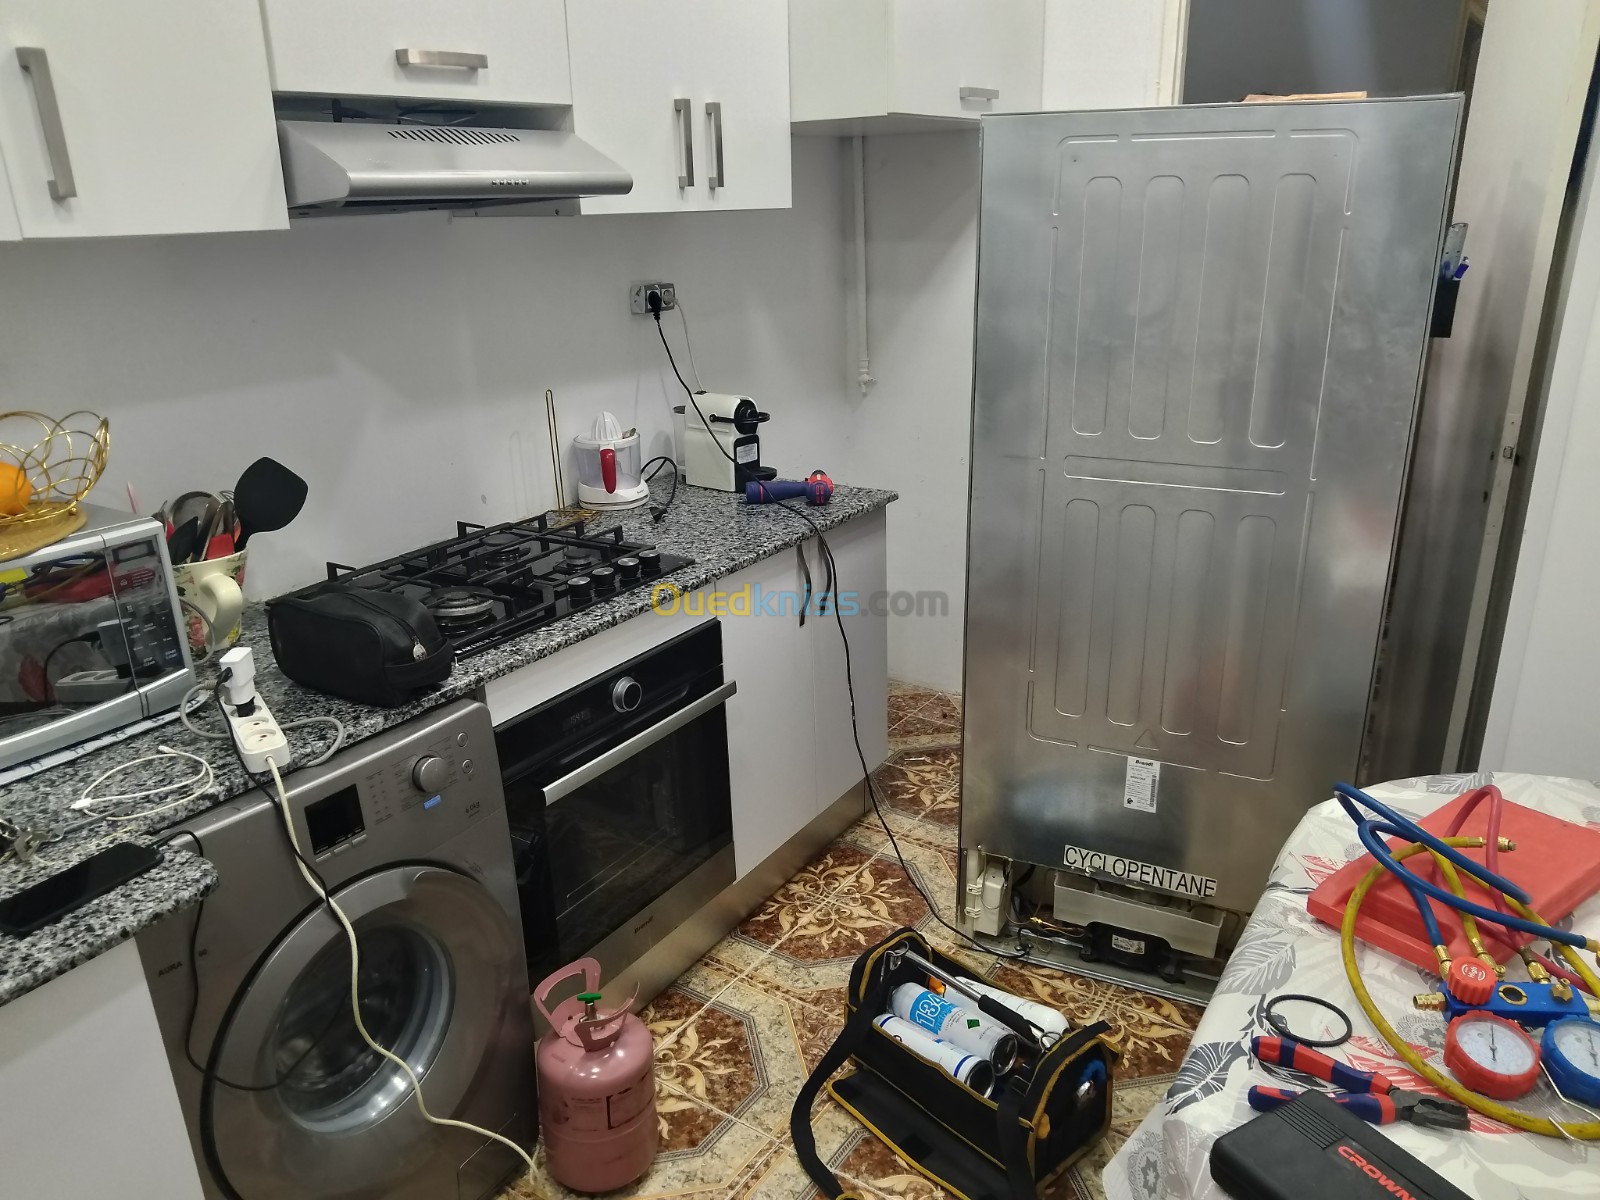 Réparation Électroménager lave vaisselle machines à laver réfrigérateur domicile 